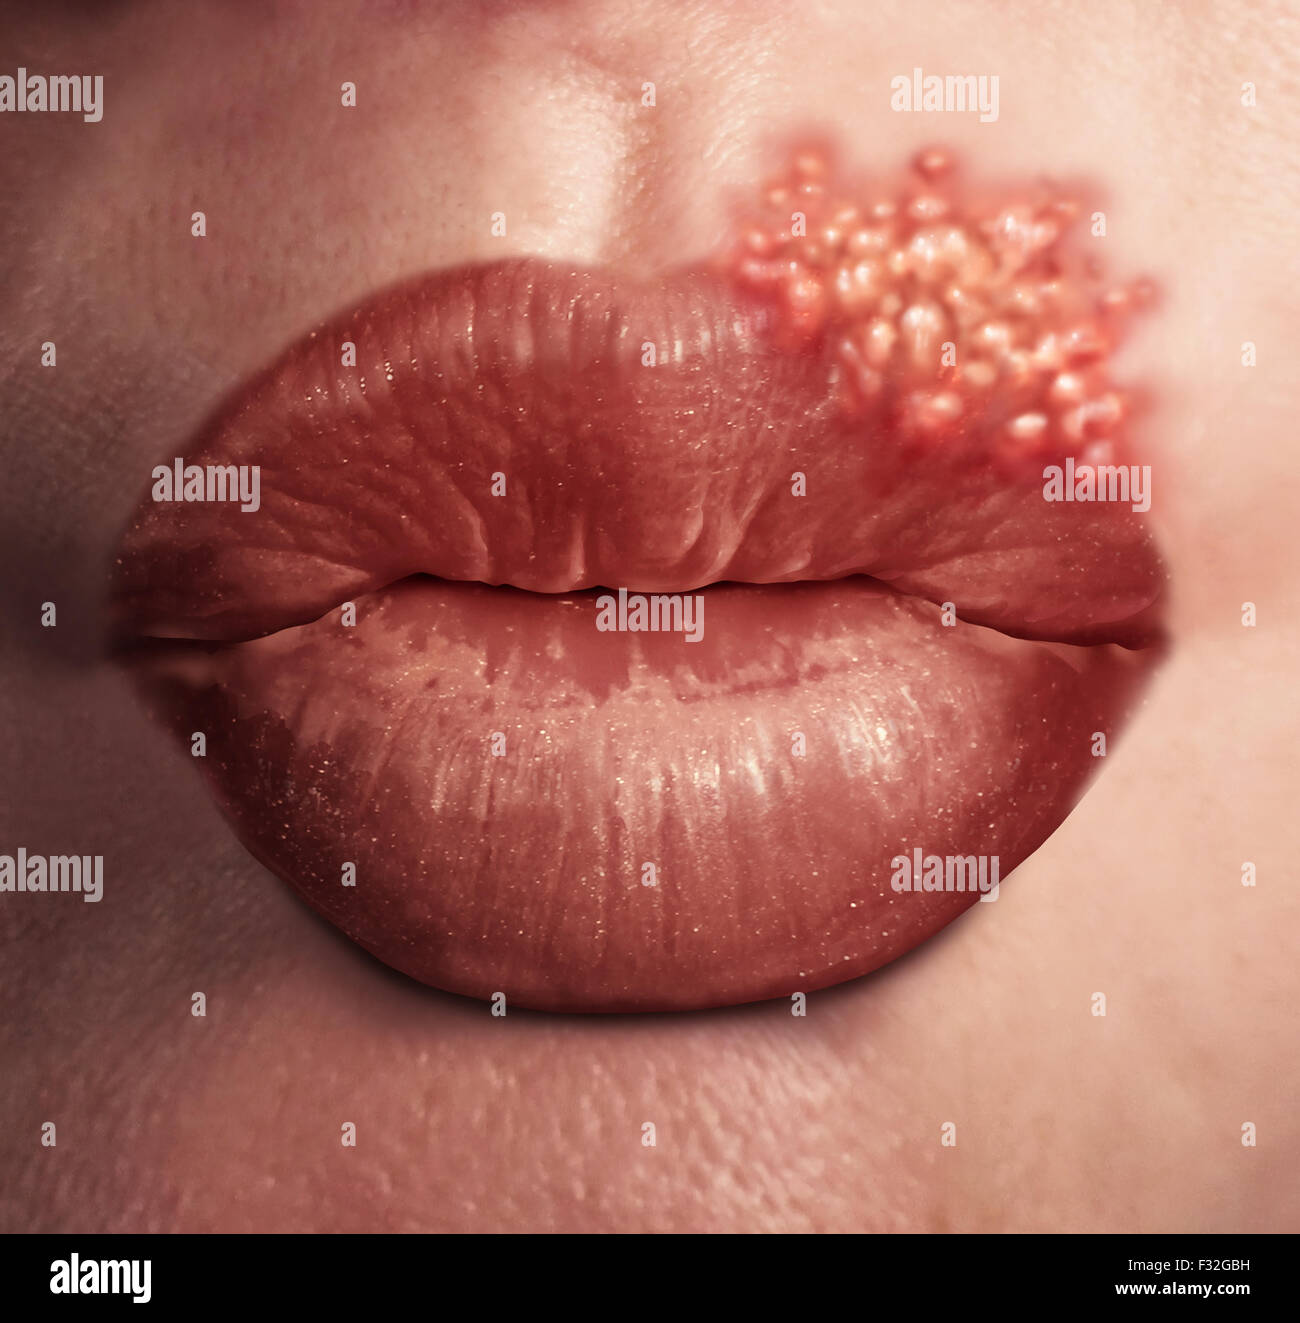 Lippenherpes Herpes Virus medizinisches Konzept als menschlichen Lippen mit einem Ausbruch von geschwollenen Fieberblasen als eine Infektion auf der Haut. Stockfoto